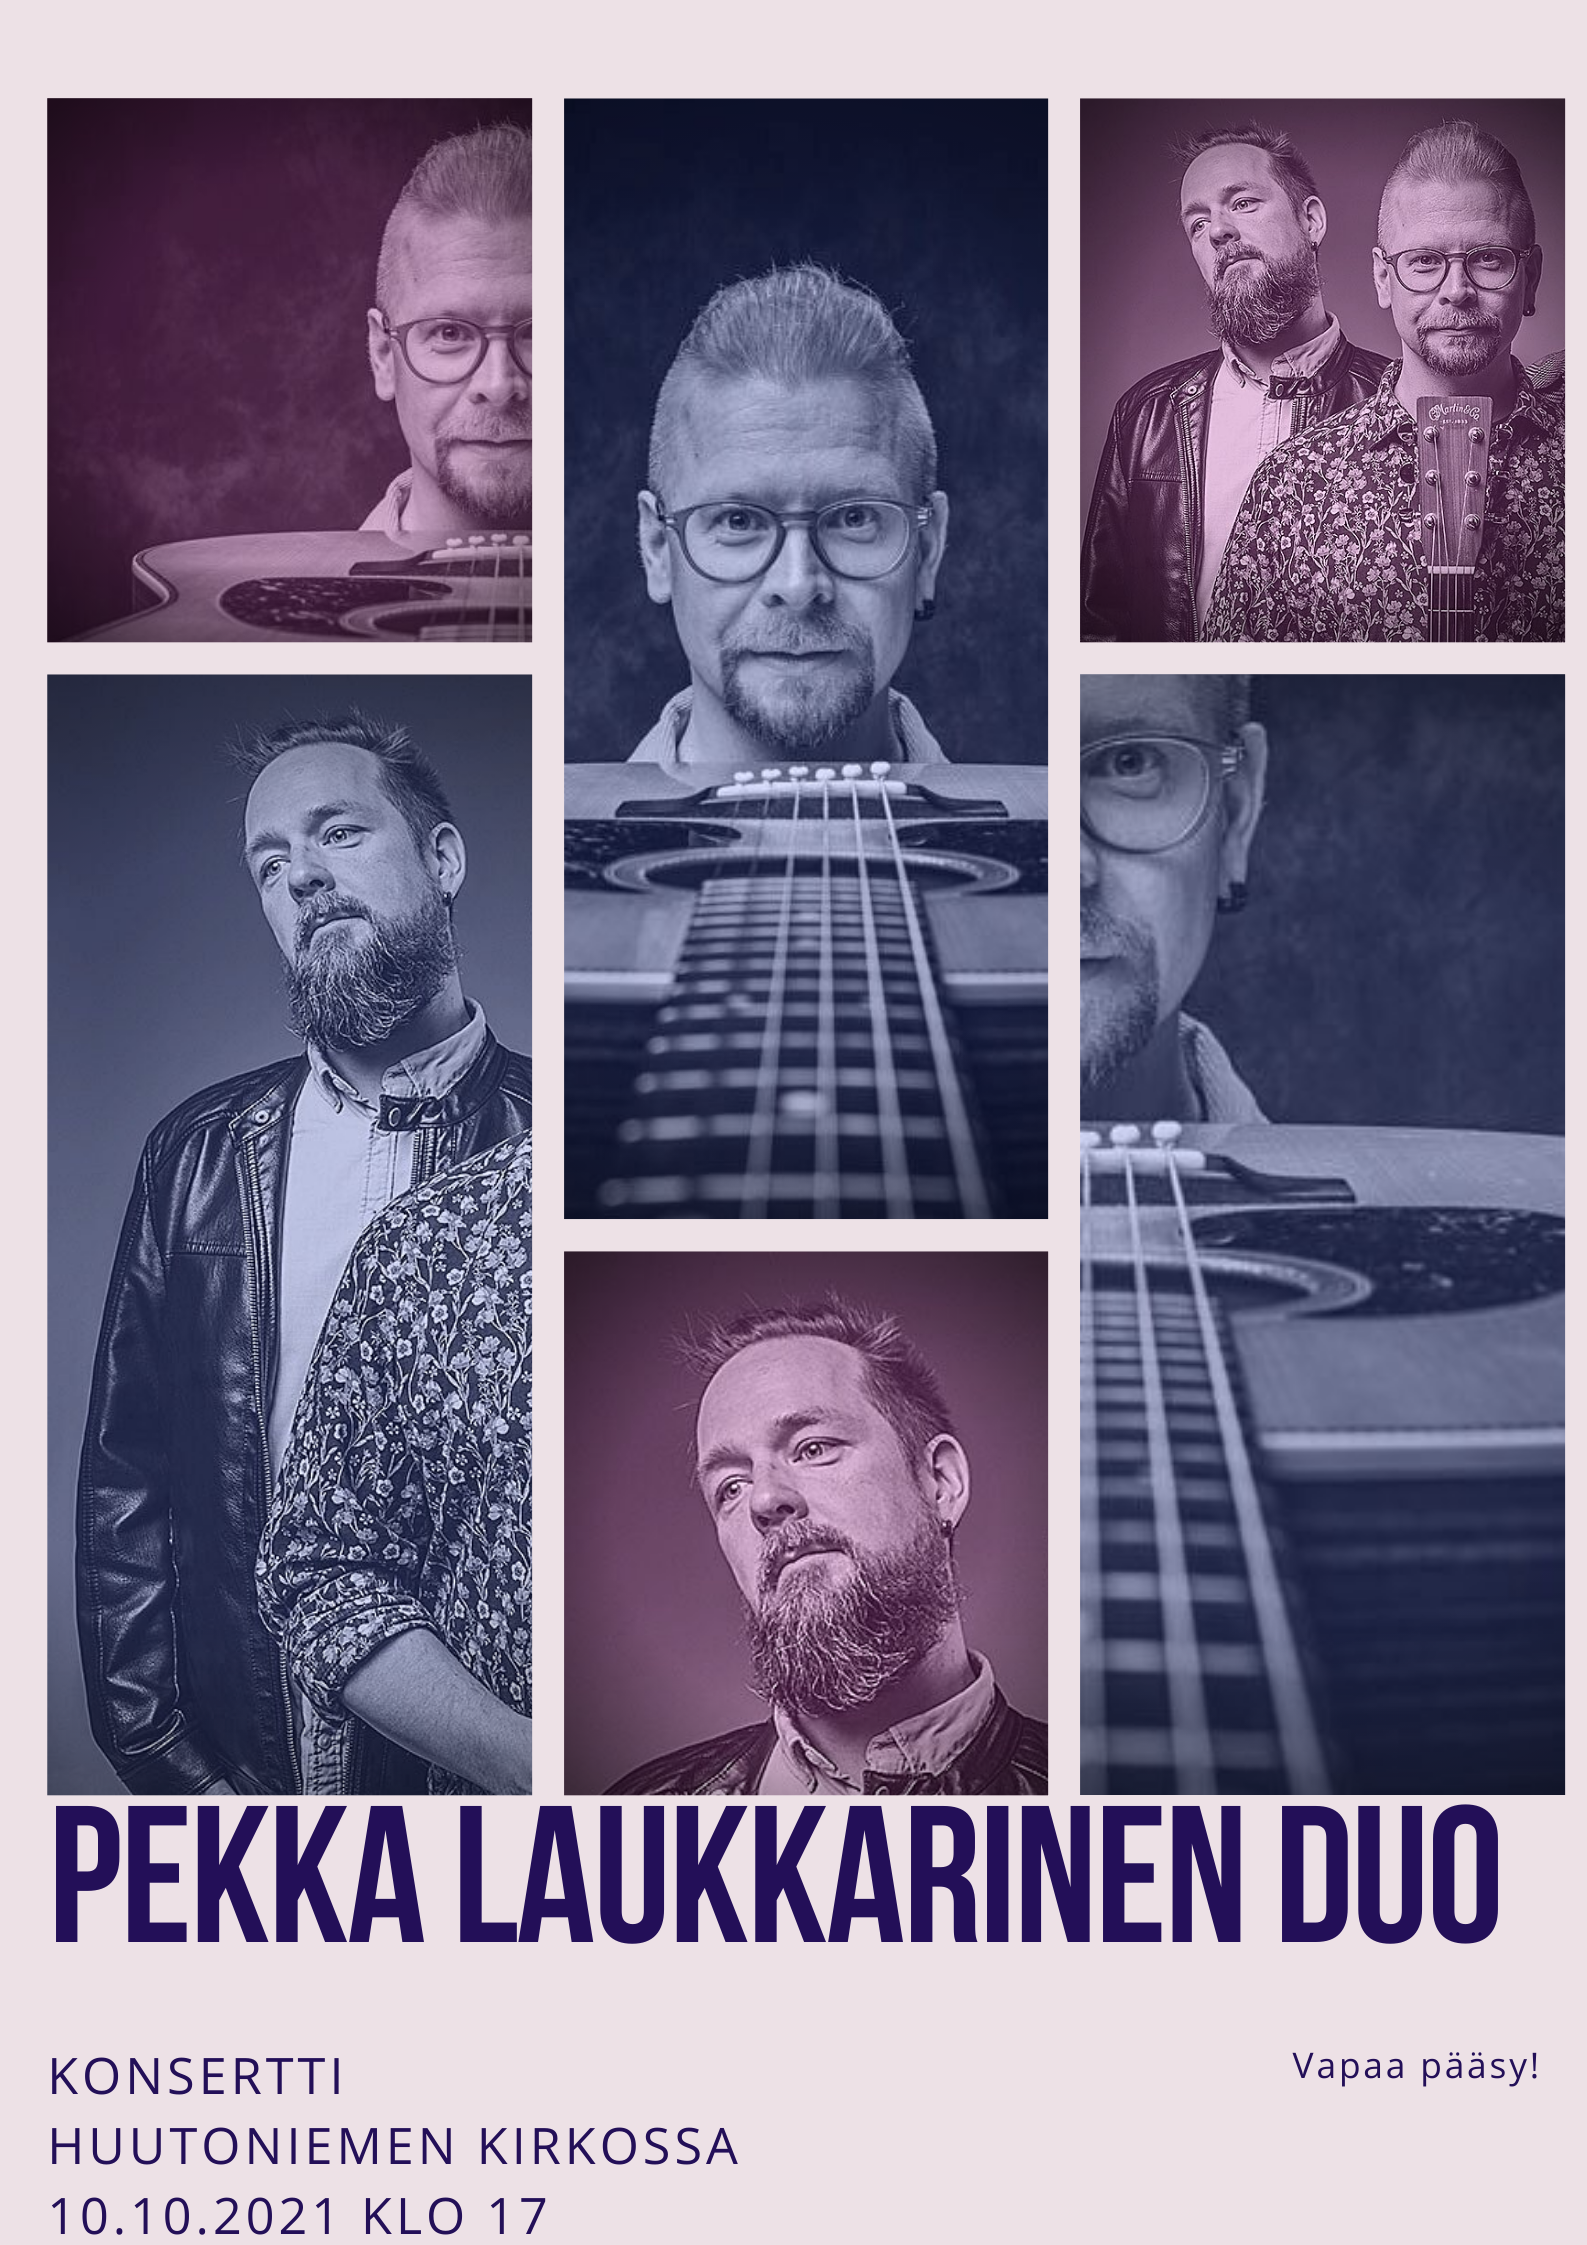 Pekka Laukkarinen Duon kasvokuvia